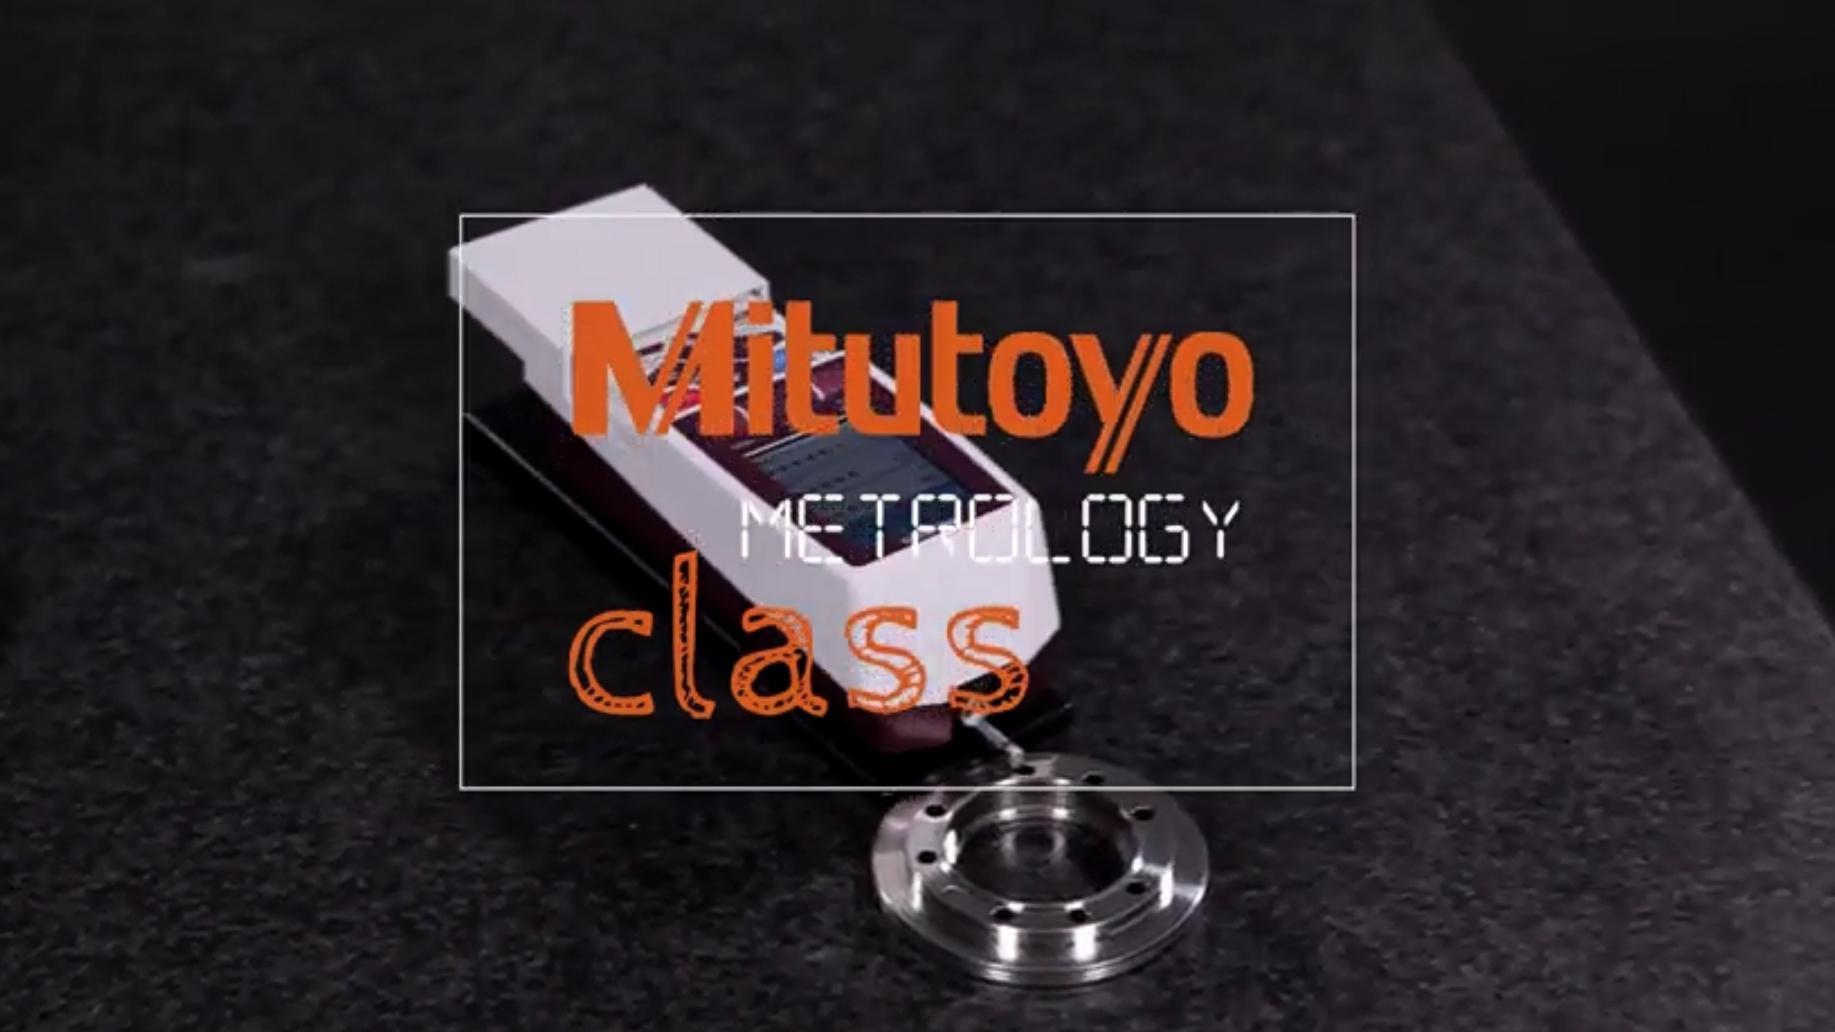 Film instruktaÅ¼owy - Mitutoyo Metrology Class